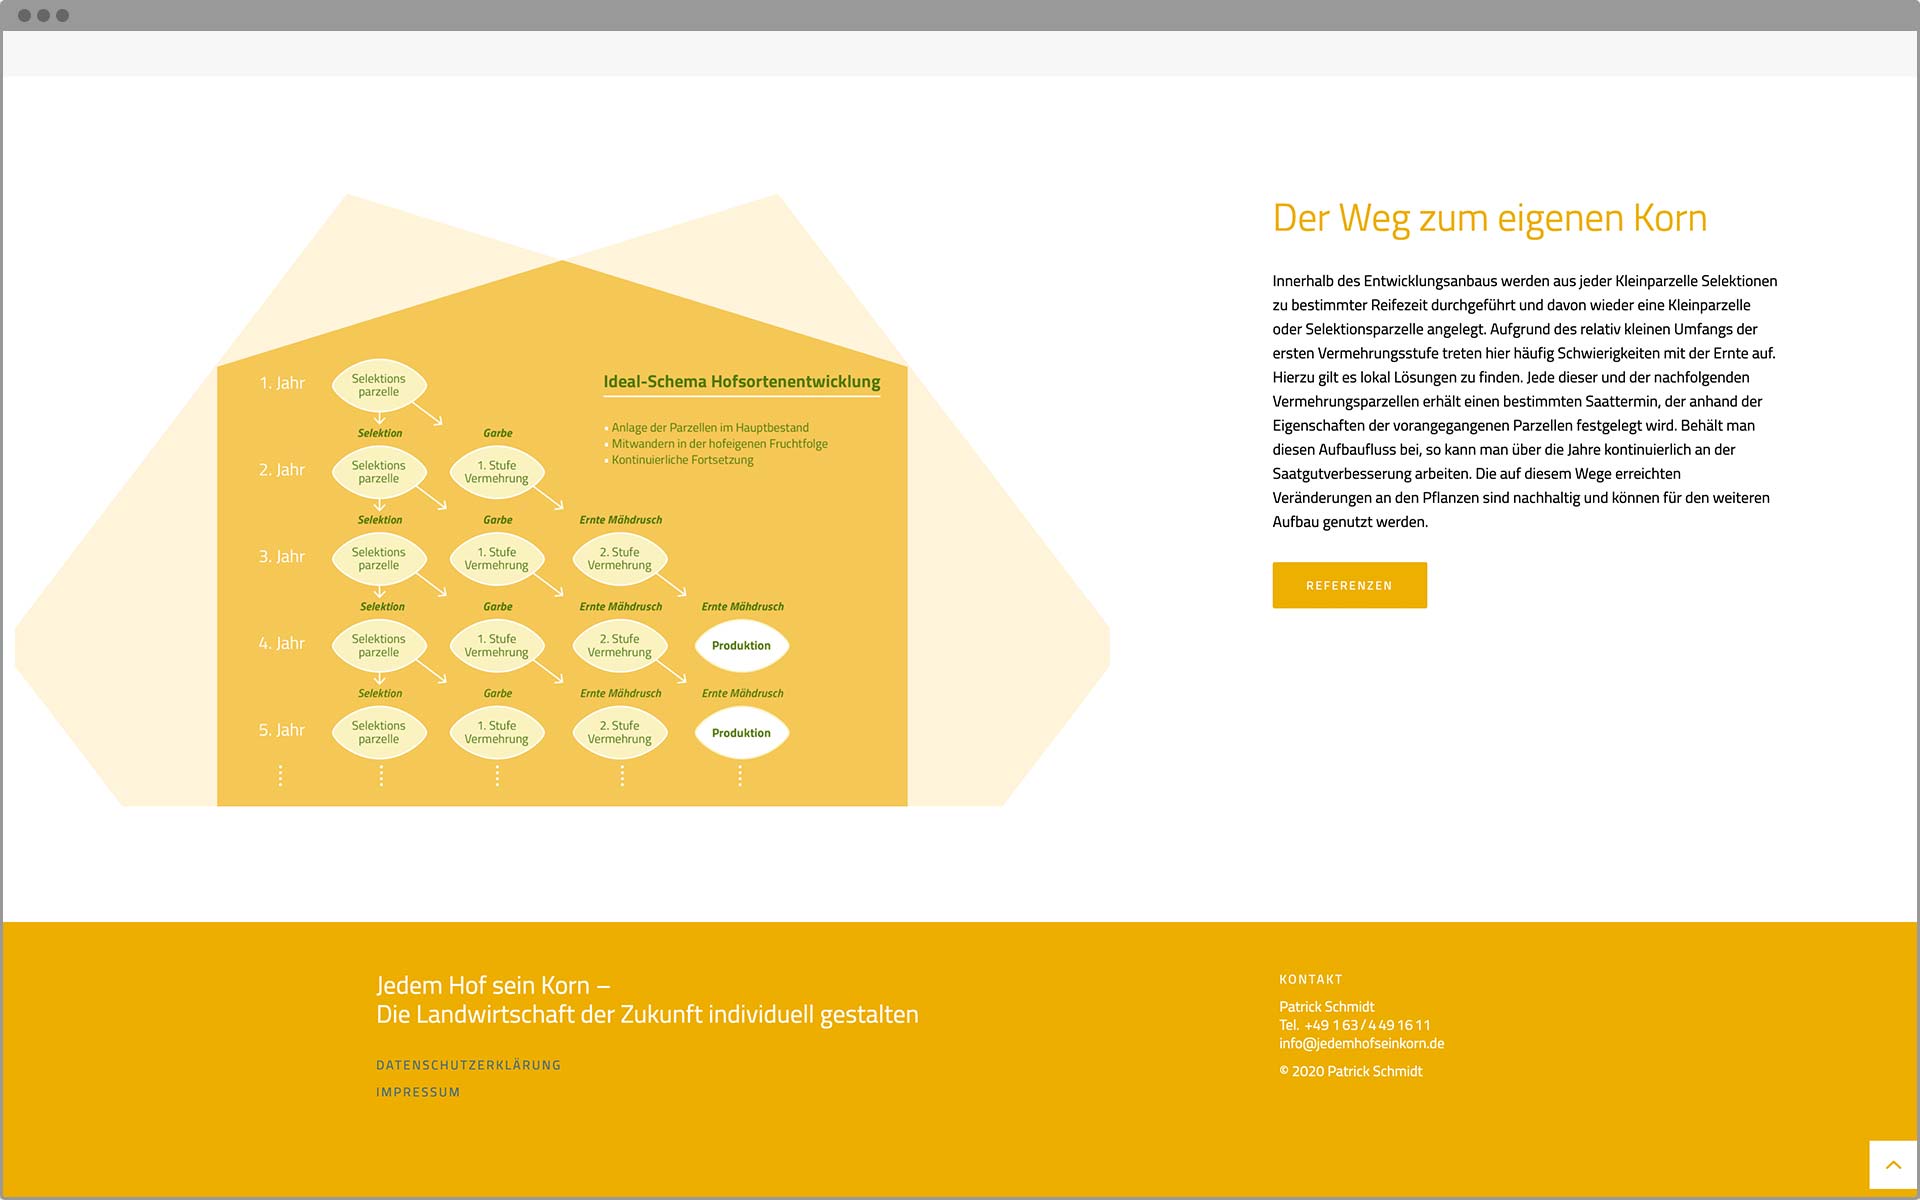 Webdesign Schema Hofsortenentwicklung JHsK